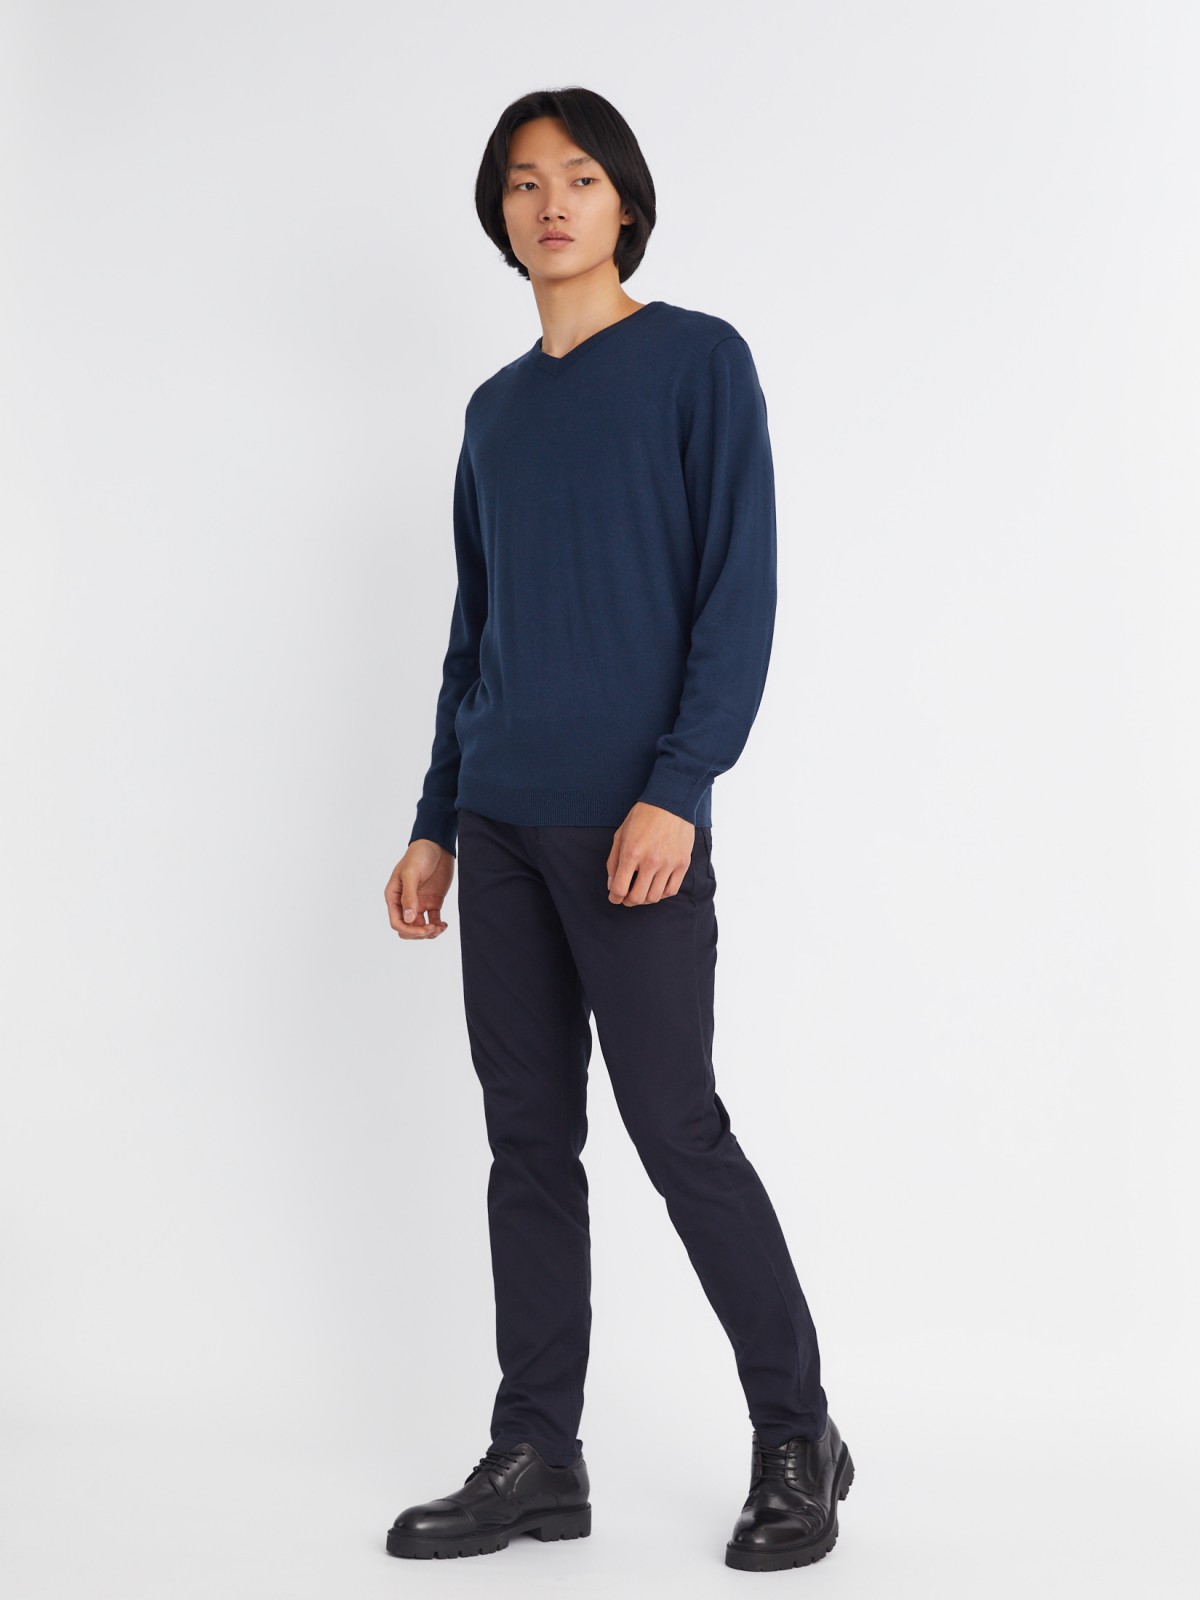 Шерстяной трикотажный пуловер с треугольным вырезом и длинным рукавом zolla 013346163042, цвет синий, размер M - фото 2